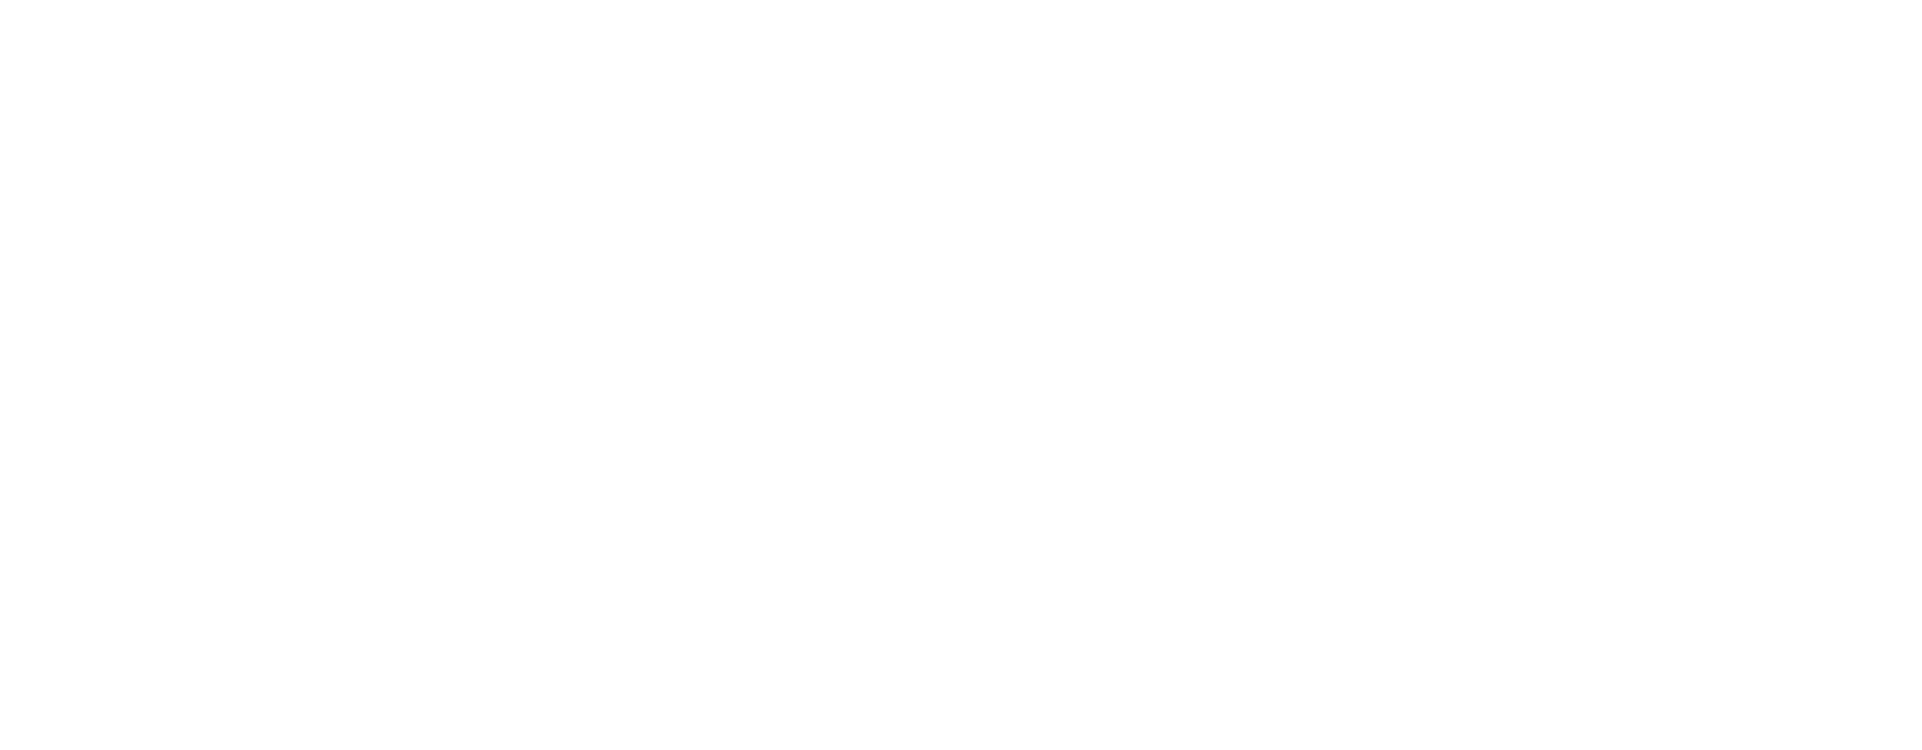 Roxhill Media